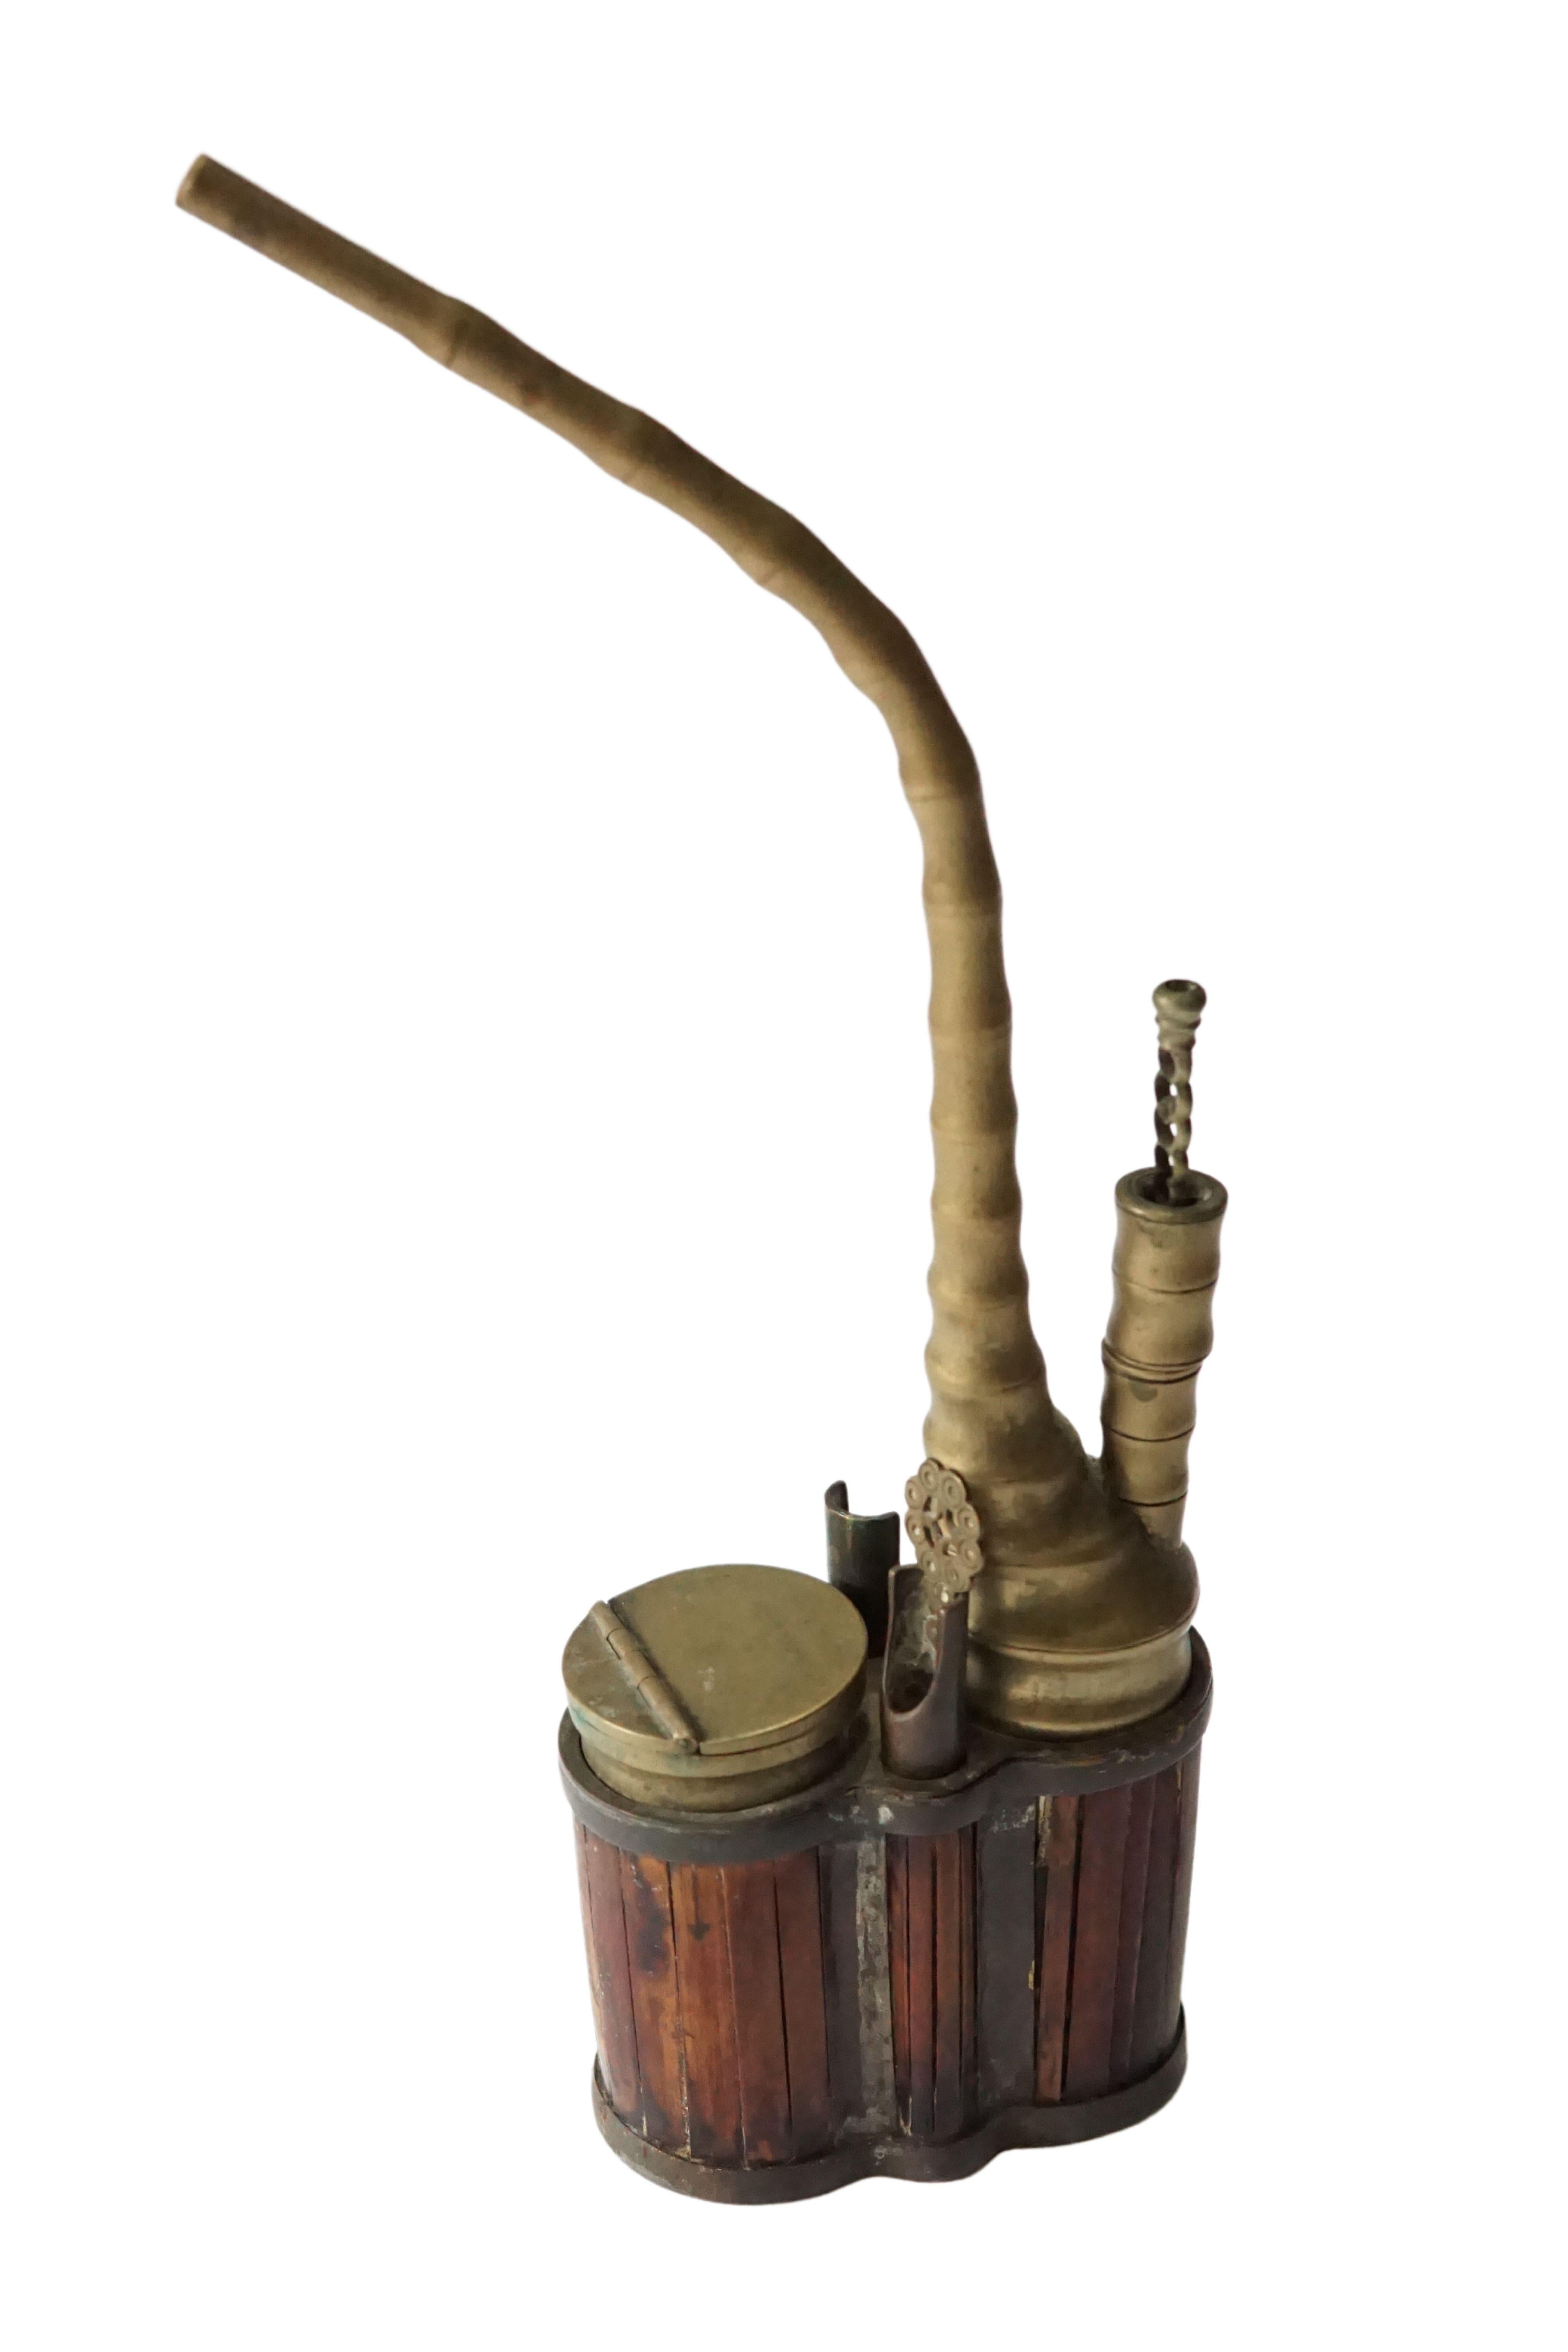 Bien que l'on croie généralement que ces pipes à eau étaient utilisées pour fumer de l'opium, elles étaient plus couramment utilisées pour fumer du tabac. Le compartiment à charnière est l'endroit où le tabac est placé pour être fumé. Cette pipe